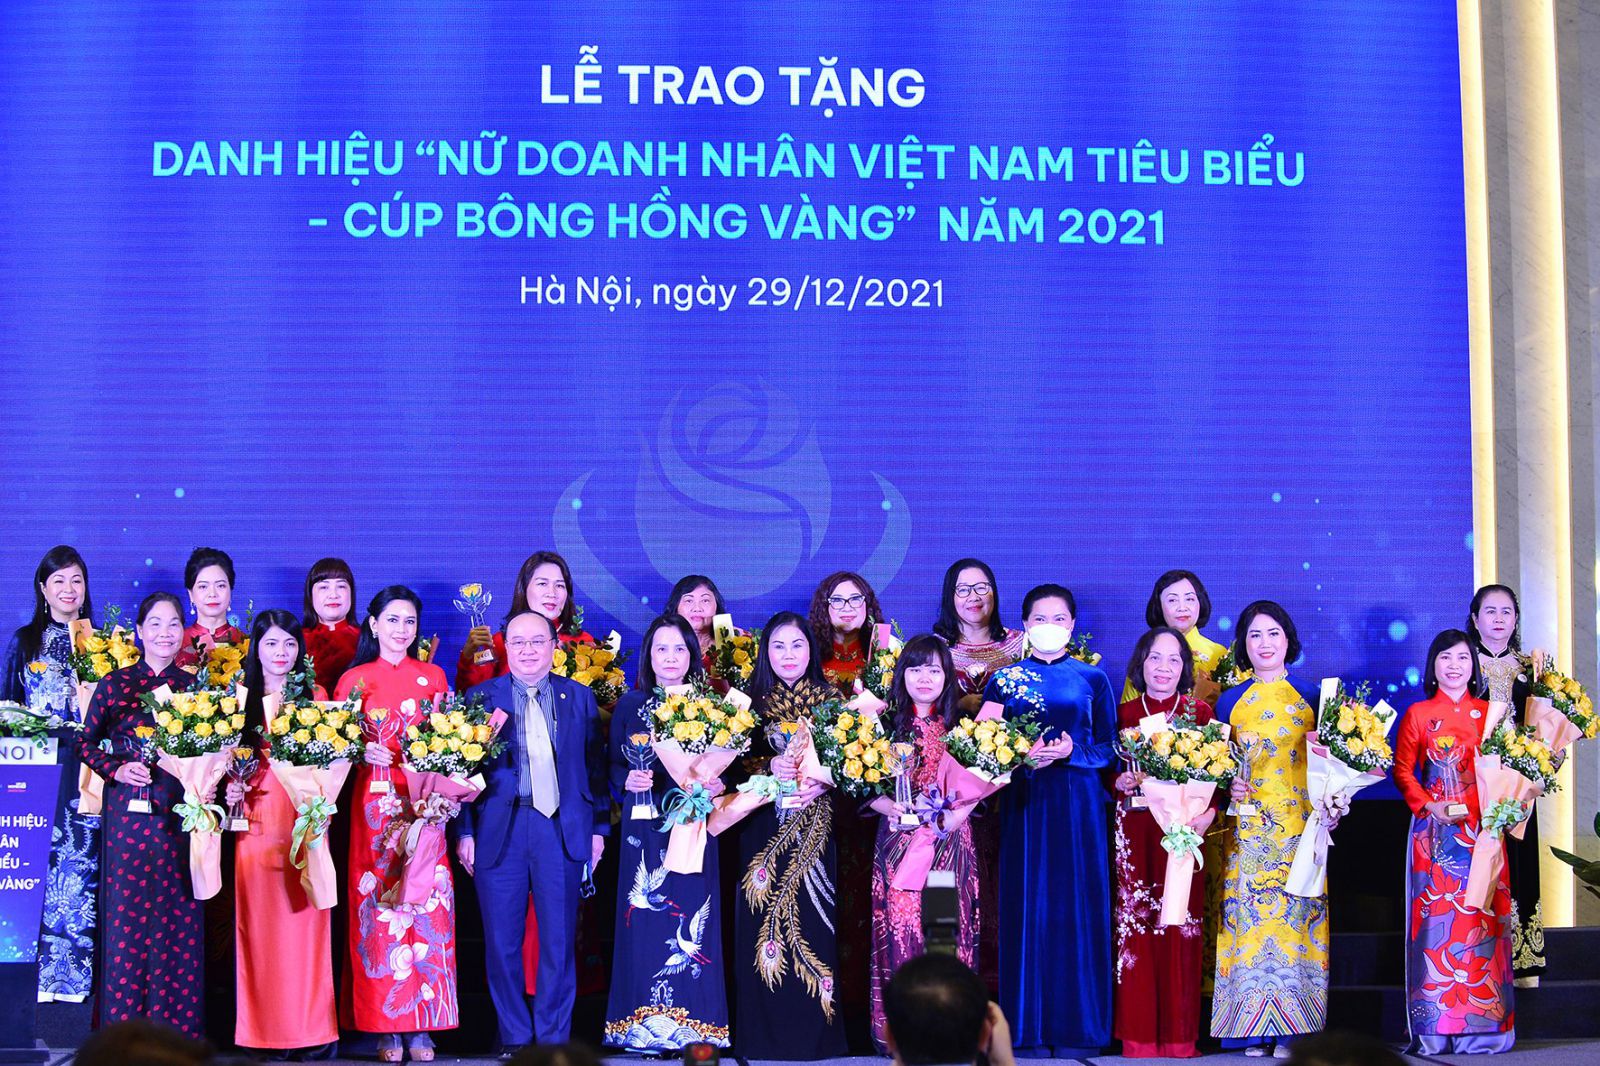 Danh hiệu “Nữ doanh nhân Việt Nam tiêu biểu – Cúp Bông Hồng Vàng” đã được trao tặng cho 60 nữ doanh nhân tiêu biểu trong năm 2021.